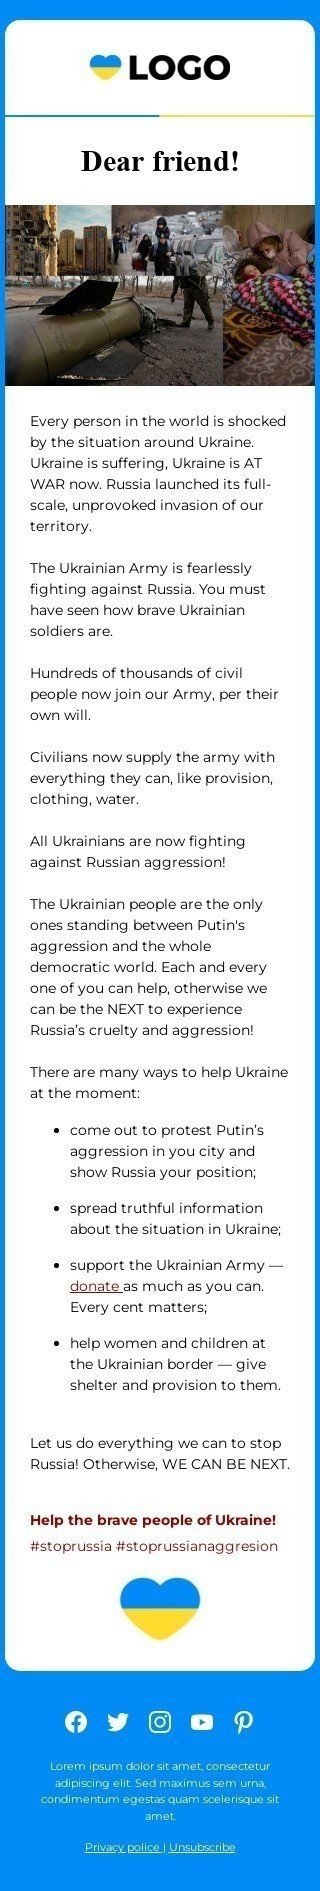 The "Spread a word Russian Aggression in Ukraine" email template Visualização de dispositivo móvel